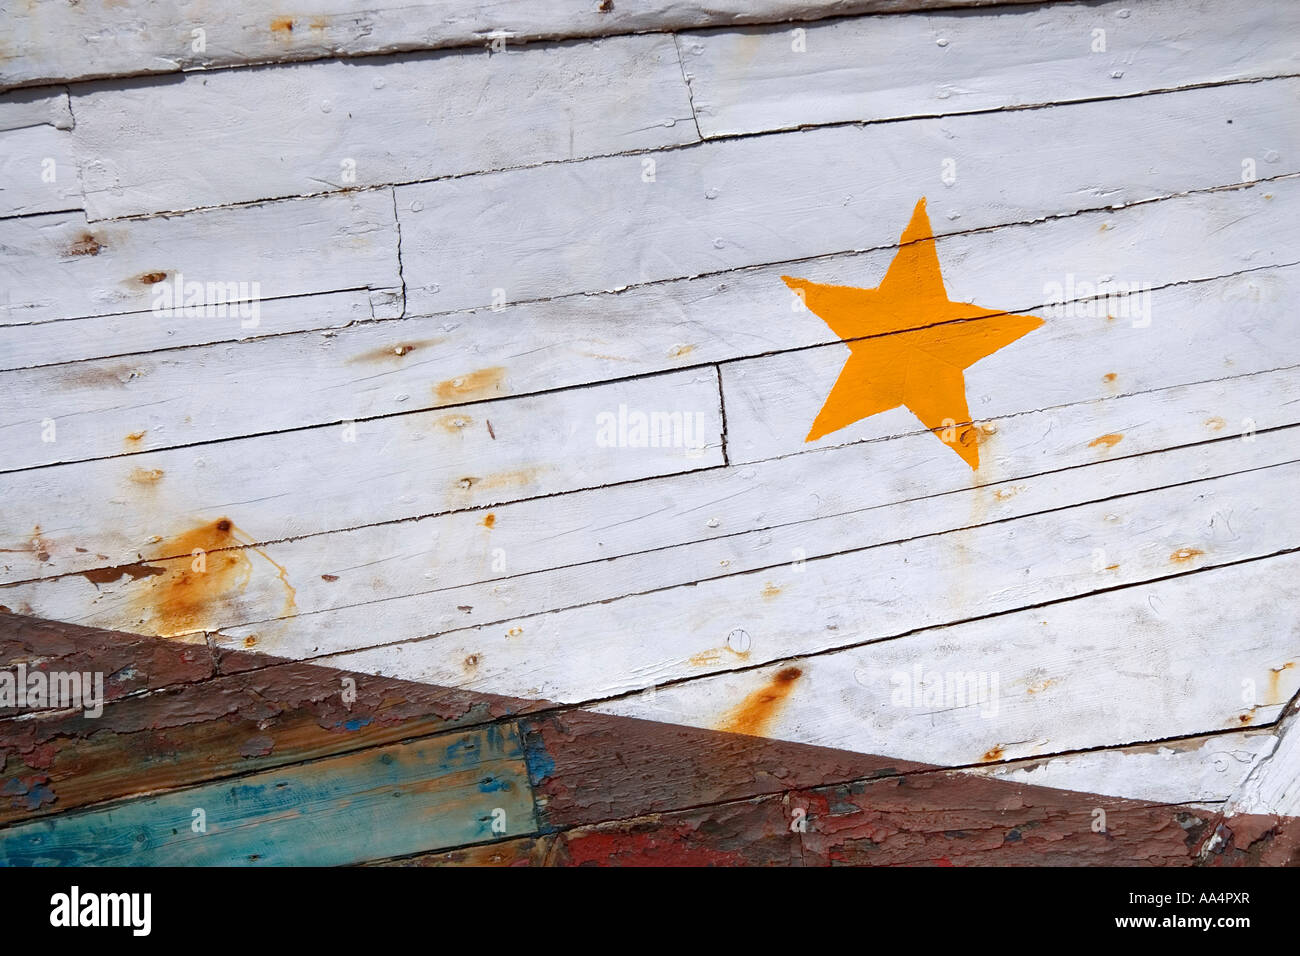 Détail de la structure en bois d'un bateau coque s une étoile jaune vif est peint sur la surface blanche Banque D'Images